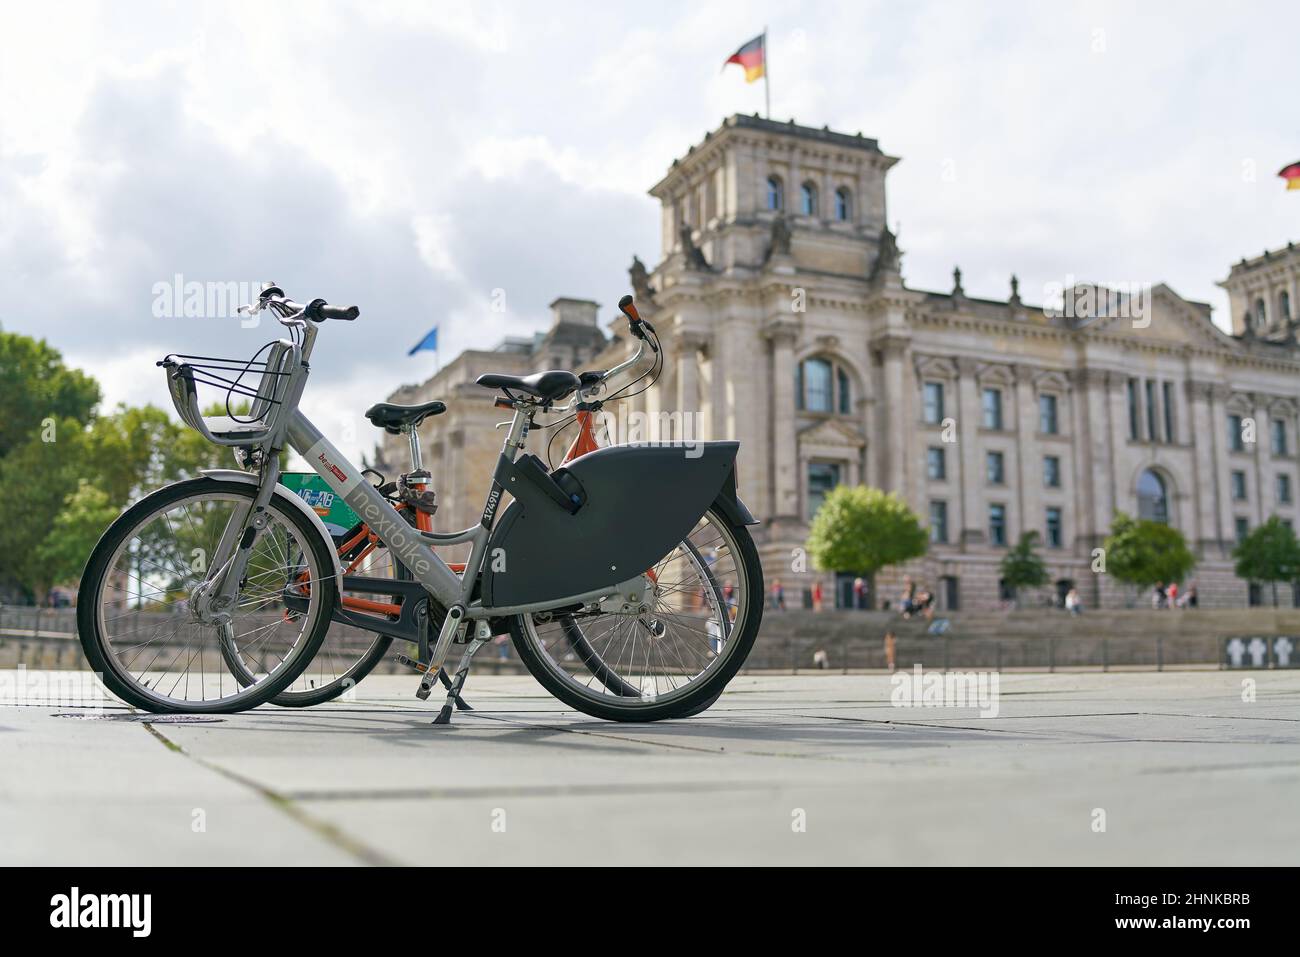 Vélo du système public de location de vélos de la ville de Berlin Nextbike dans le quartier du gouvernement. En arrière-plan le Reichstag. Banque D'Images